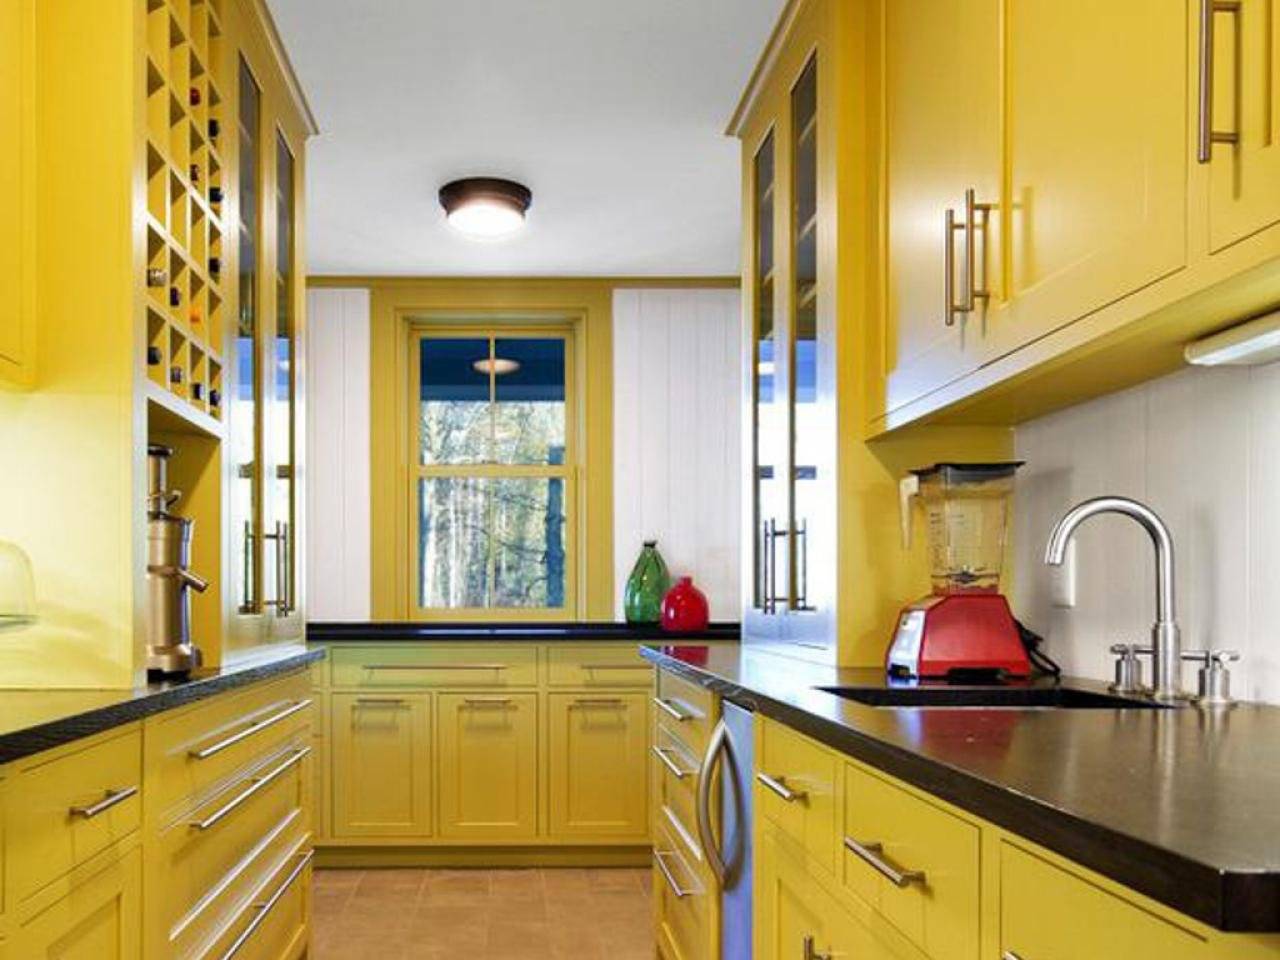 Дизайн кухни зеленого цвета — 125 фото современных примеров оформления кухни в зеленом